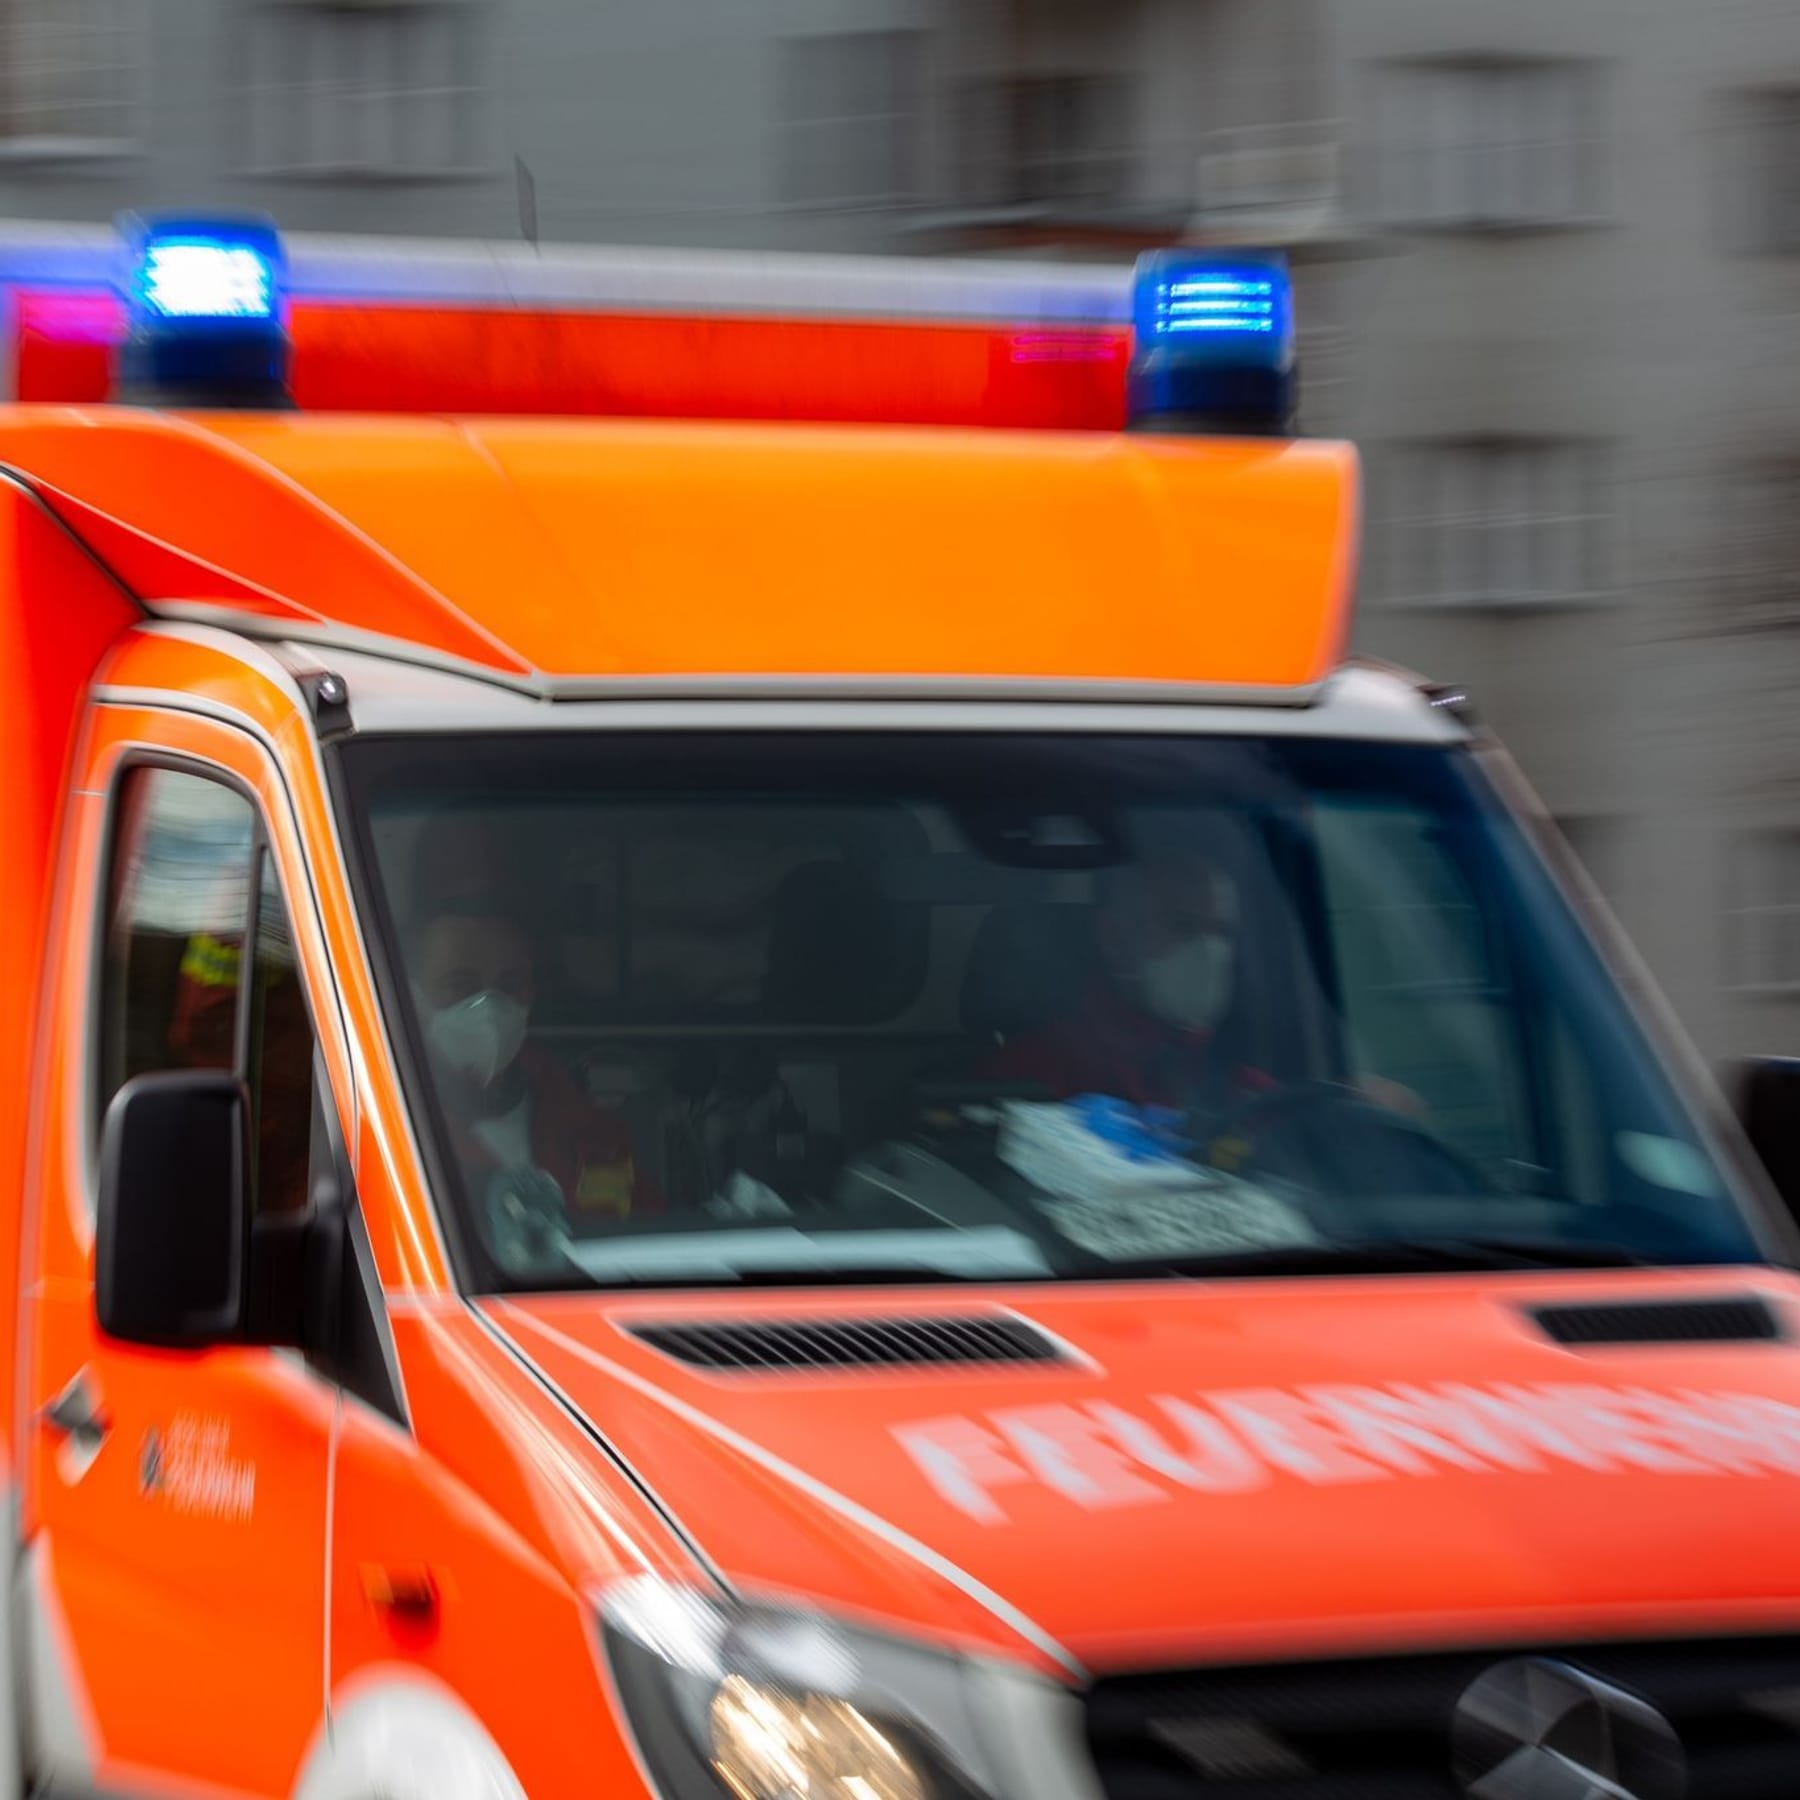 Mittelfranken: Krankenwagen gerät in Gegenverkehr – Drei Tote - WELT